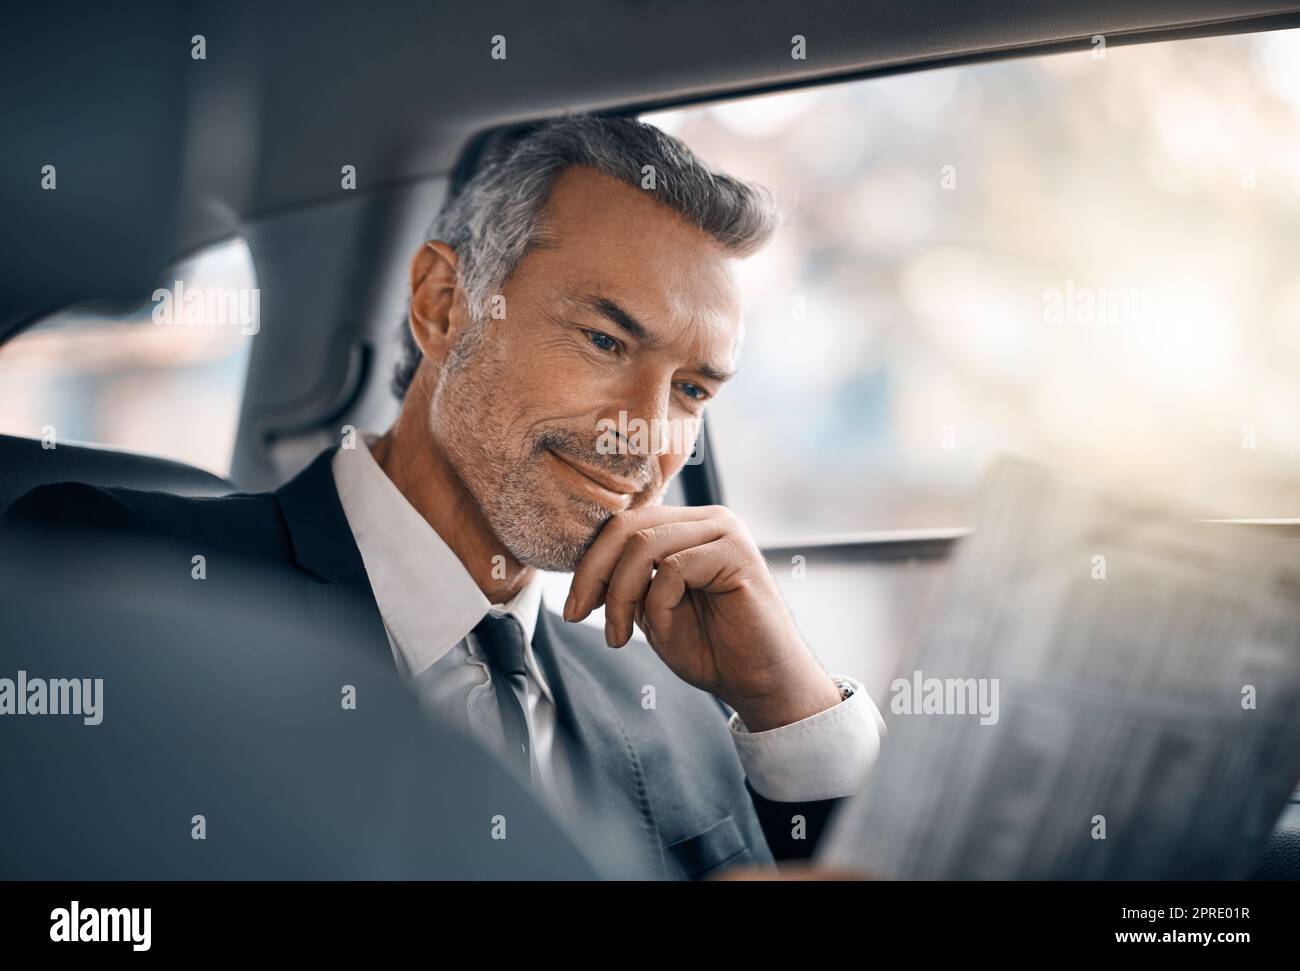 La notizia sembra buona oggi. Un bel uomo d'affari maturo che legge il giornale mentre si siede sul retro di un'auto durante il suo viaggio mattutino. Foto Stock